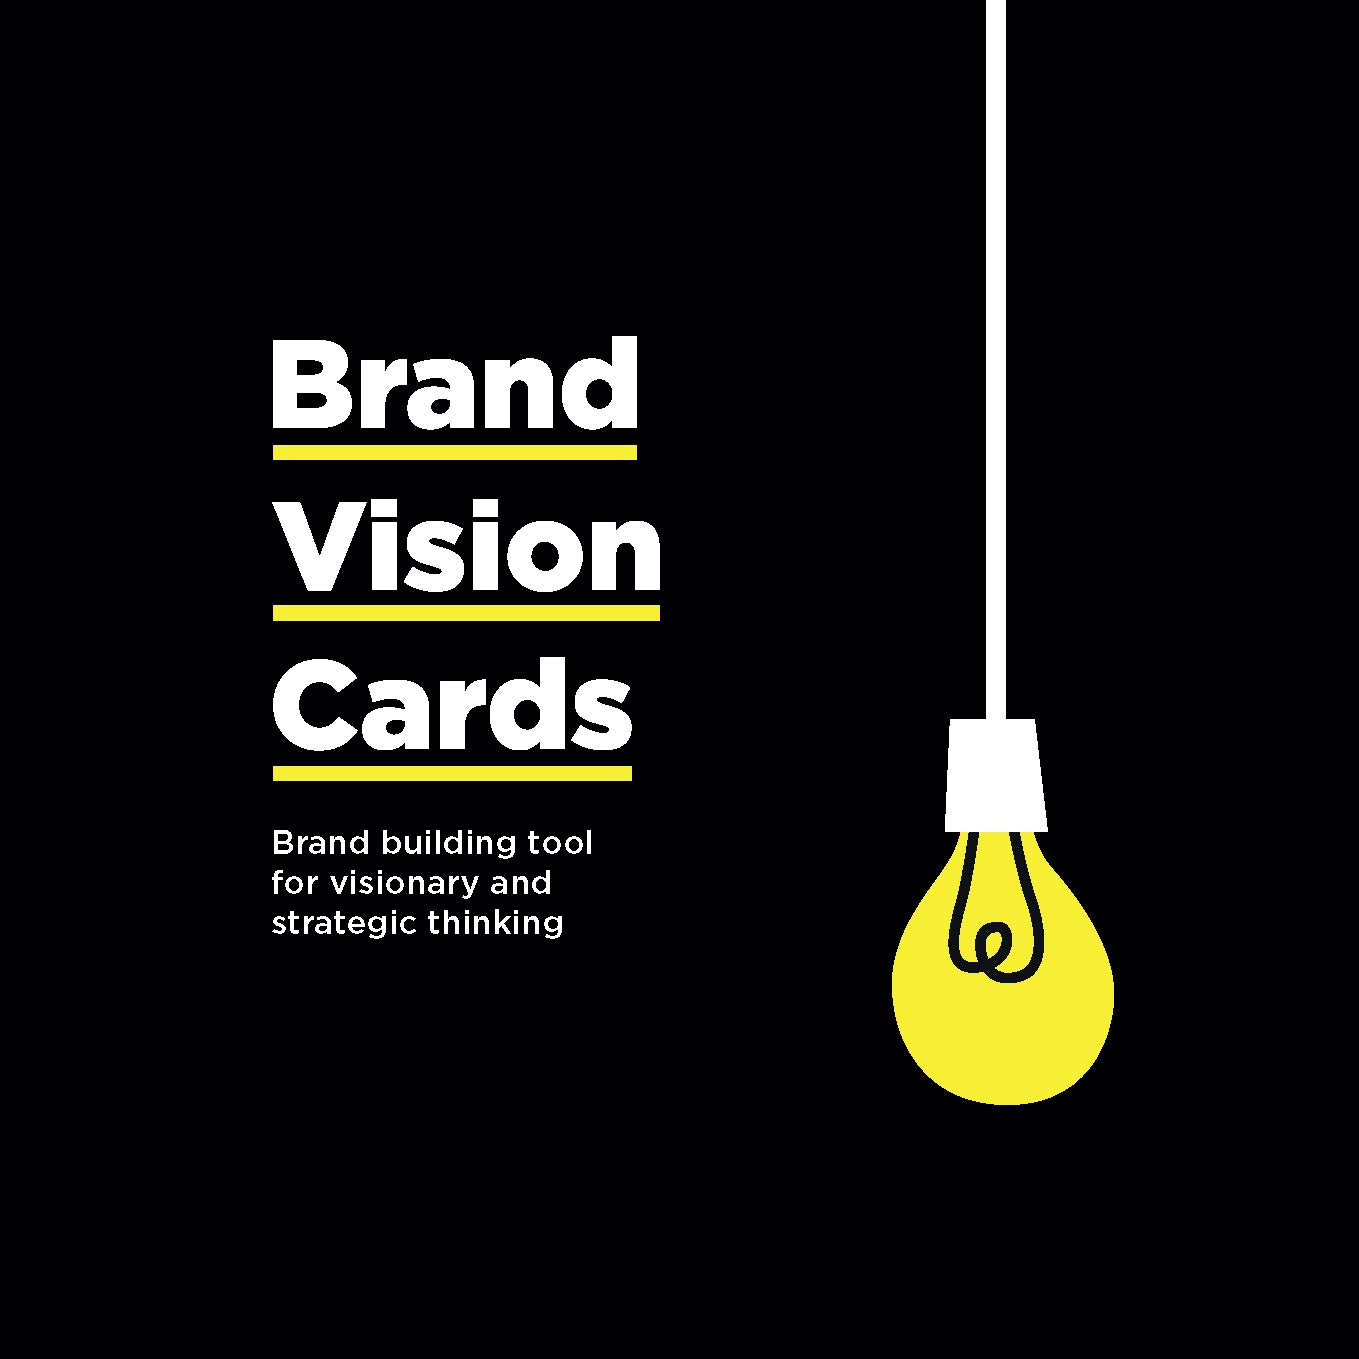 Brand Vision Cards | Dorte Nielsen, Ingvar Jonsson Share